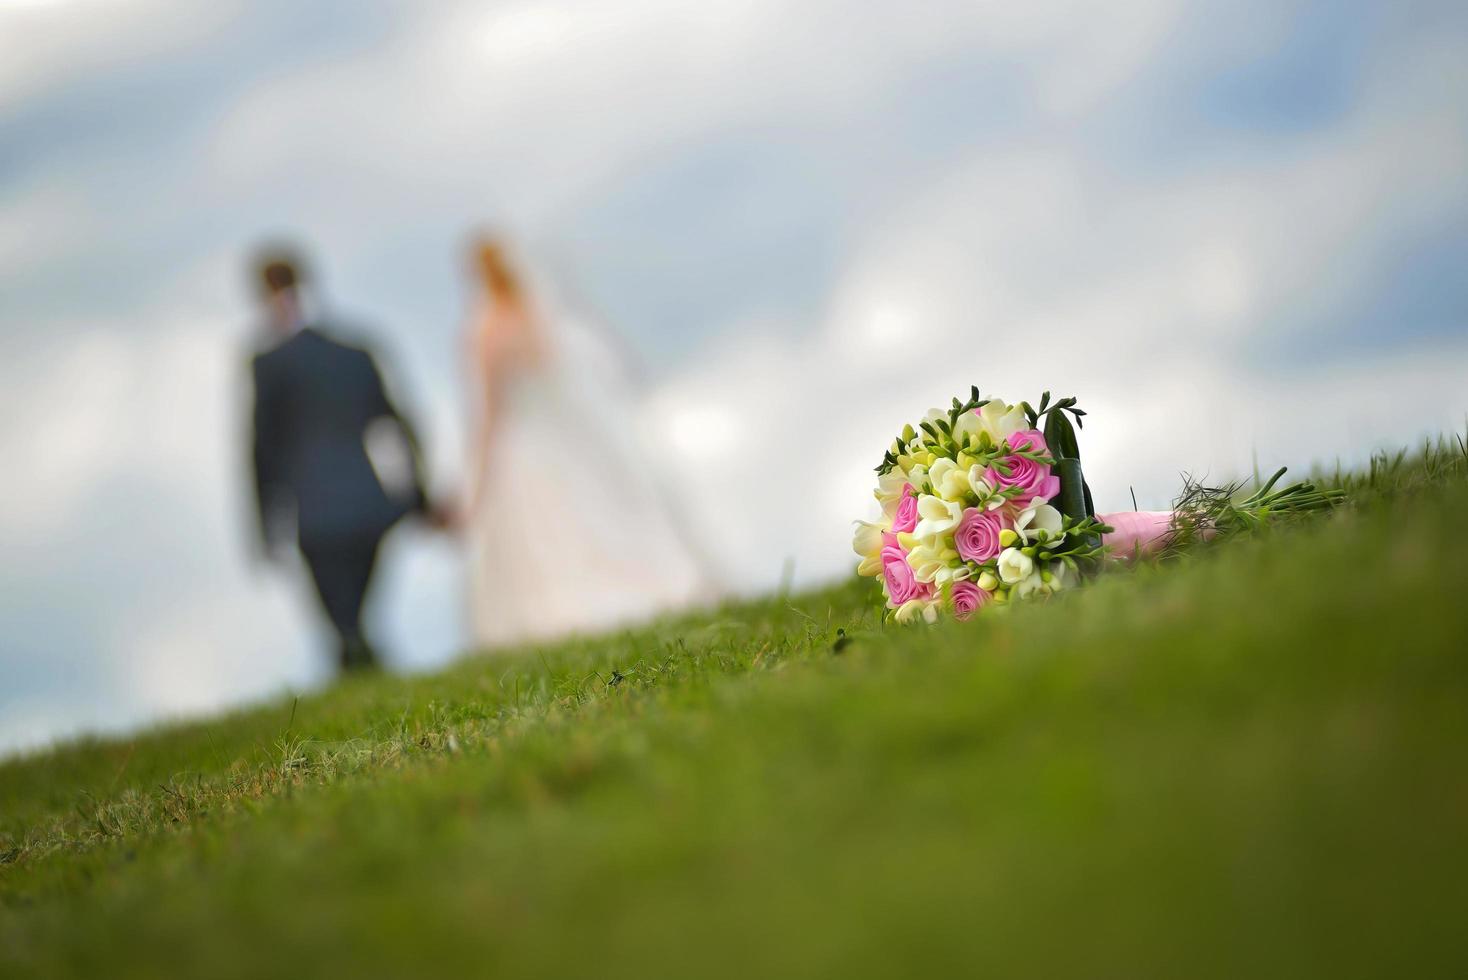 bröllopsbukett på gräs med ett gift par i bakgrunden foto